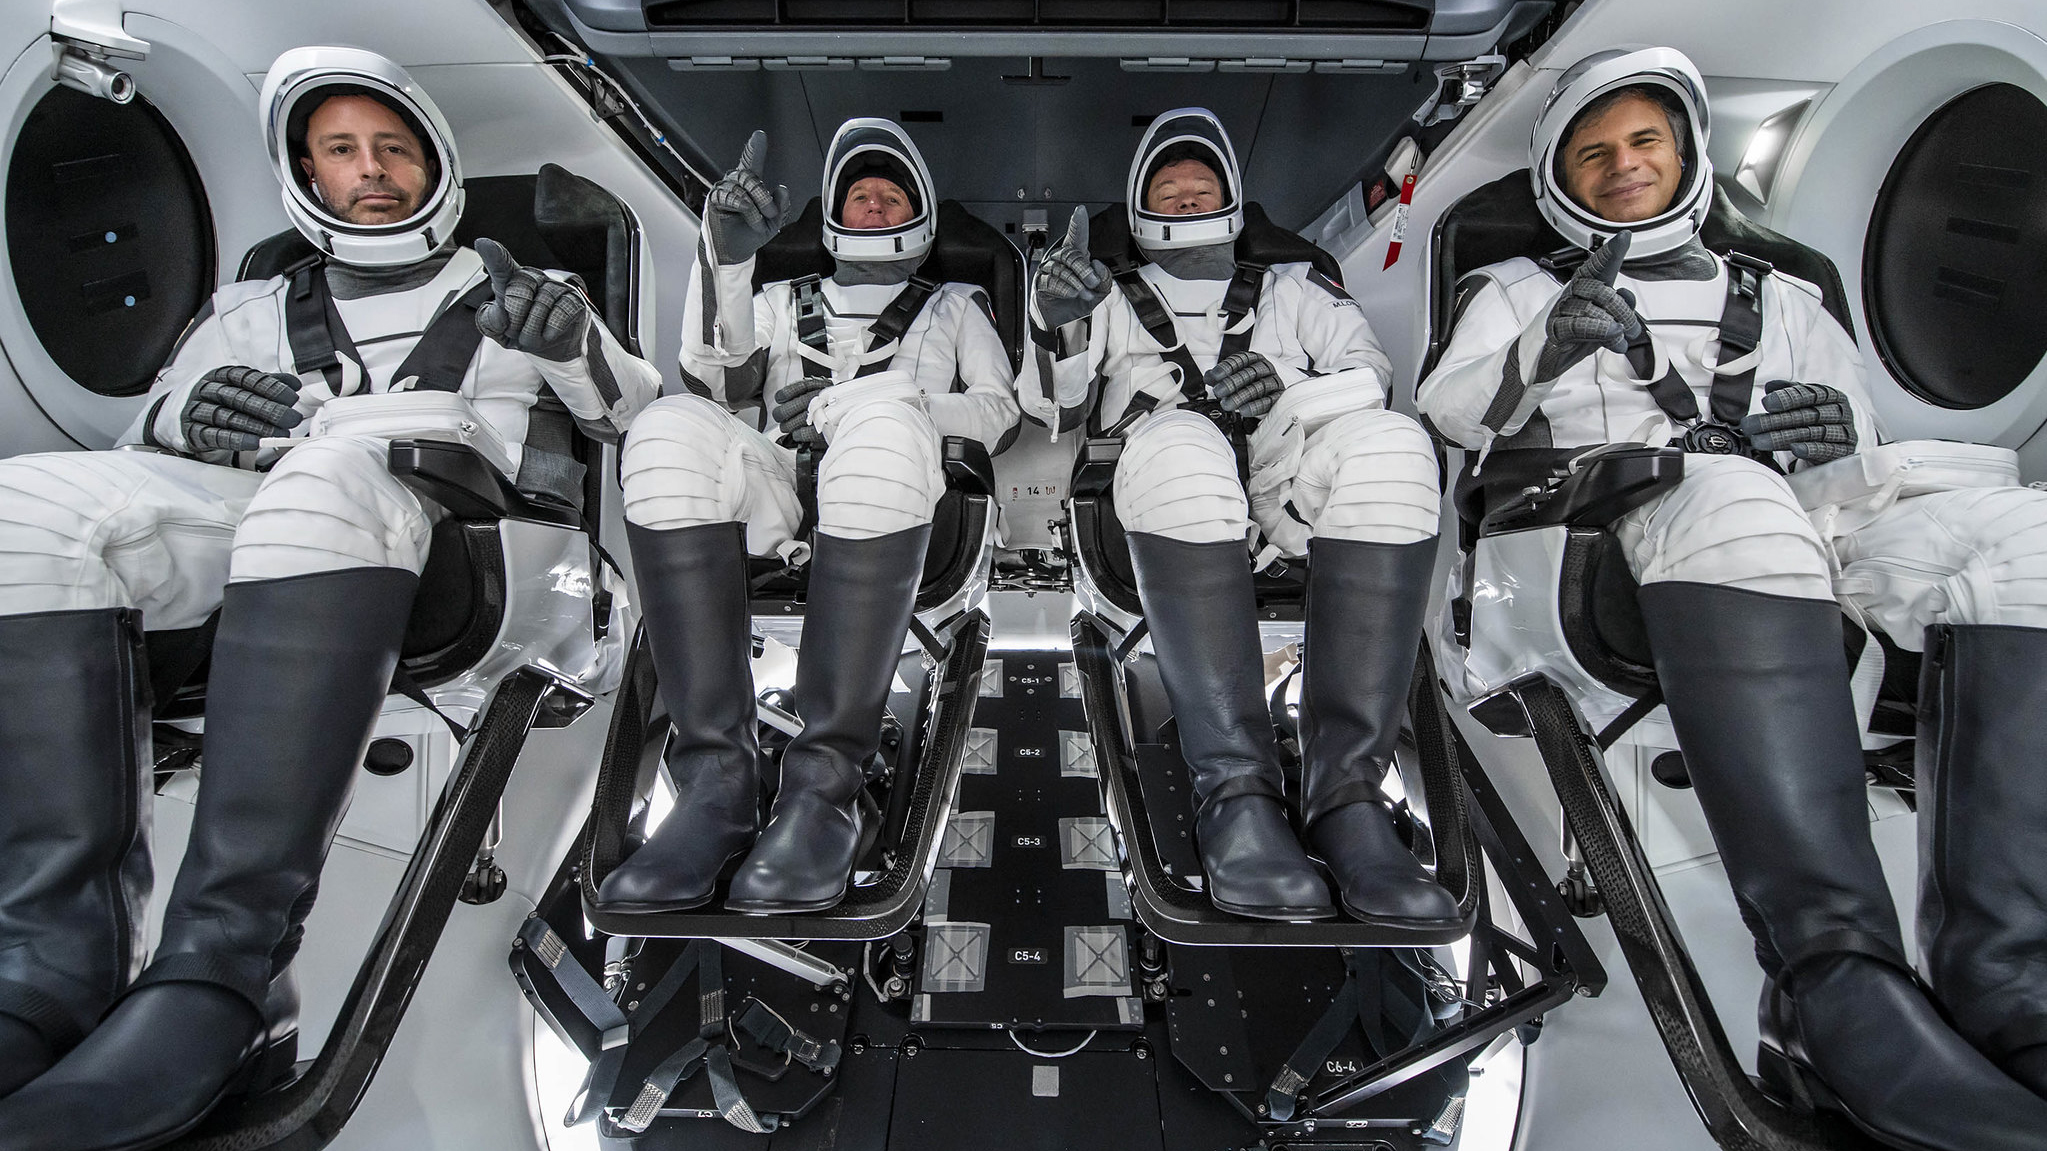 L'équipage de la mission Ax-1 d'Axiom Space pose pour une photo à l'intérieur d'un vaisseau spatial SpaceX Crew Dragon pendant l'entraînement.  Ce sont : (de gauche à droite) Mark Pathy ;  Larry Connor;  Michael López-Alegría ;  et Eytan Stibbe.